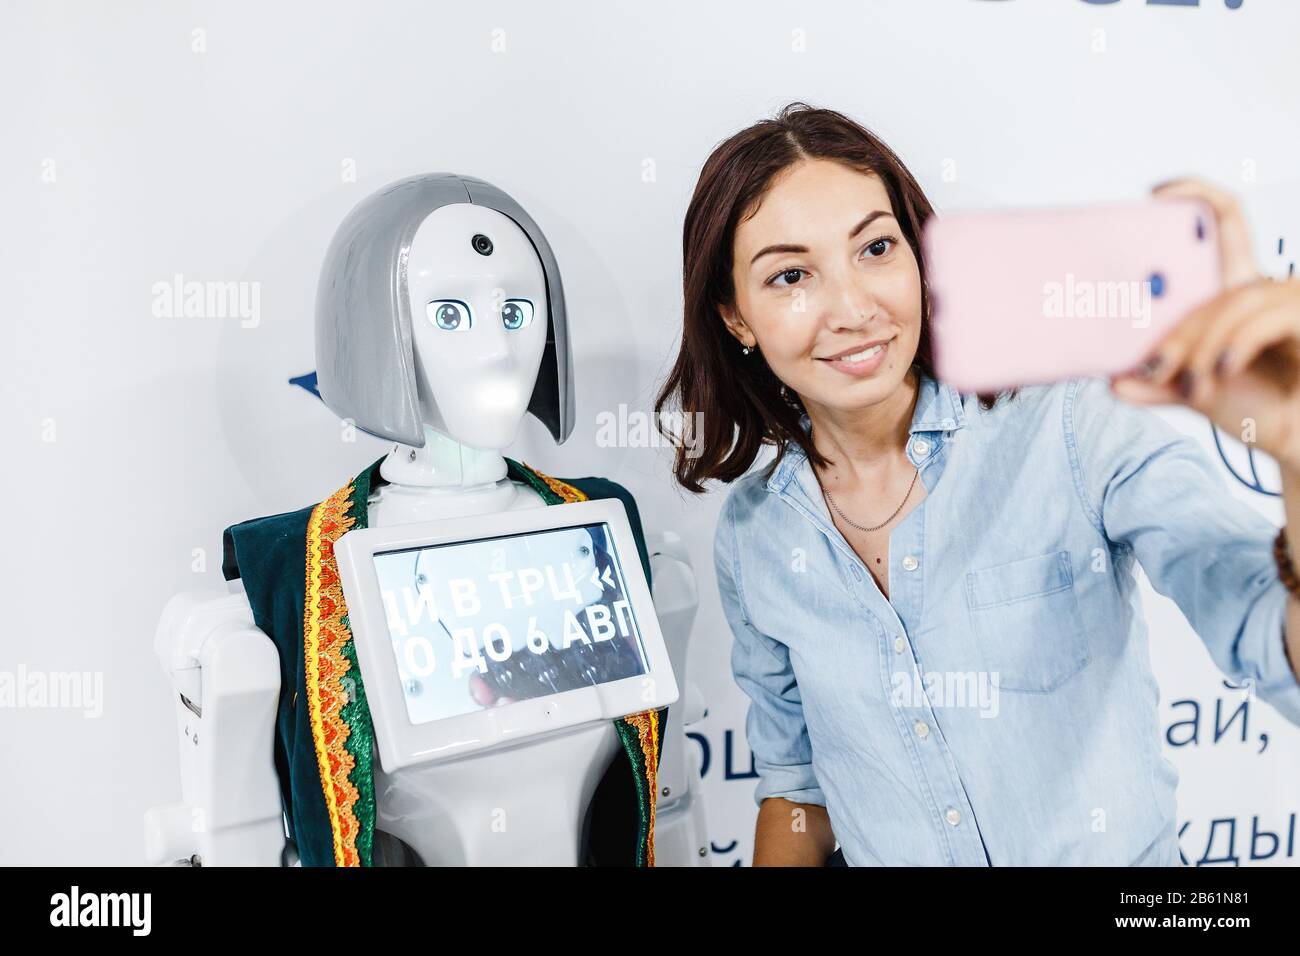 Ultra MALL, UFA, RUSSIA, 21 AGOSTO 2017: Ragazza positiva che fa selfie con robot alla mostra, concetto di istruzione Foto Stock